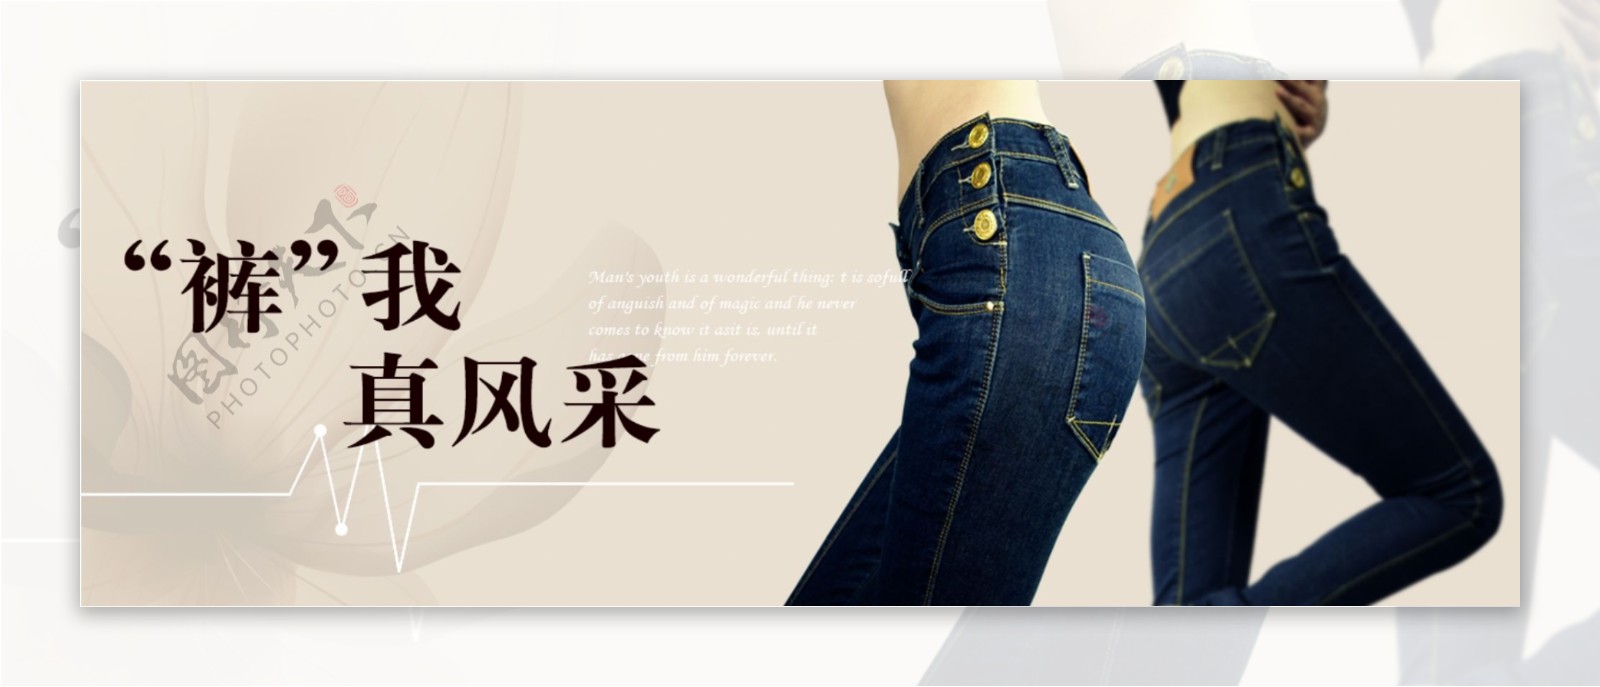 淘宝牛仔裤广告设计